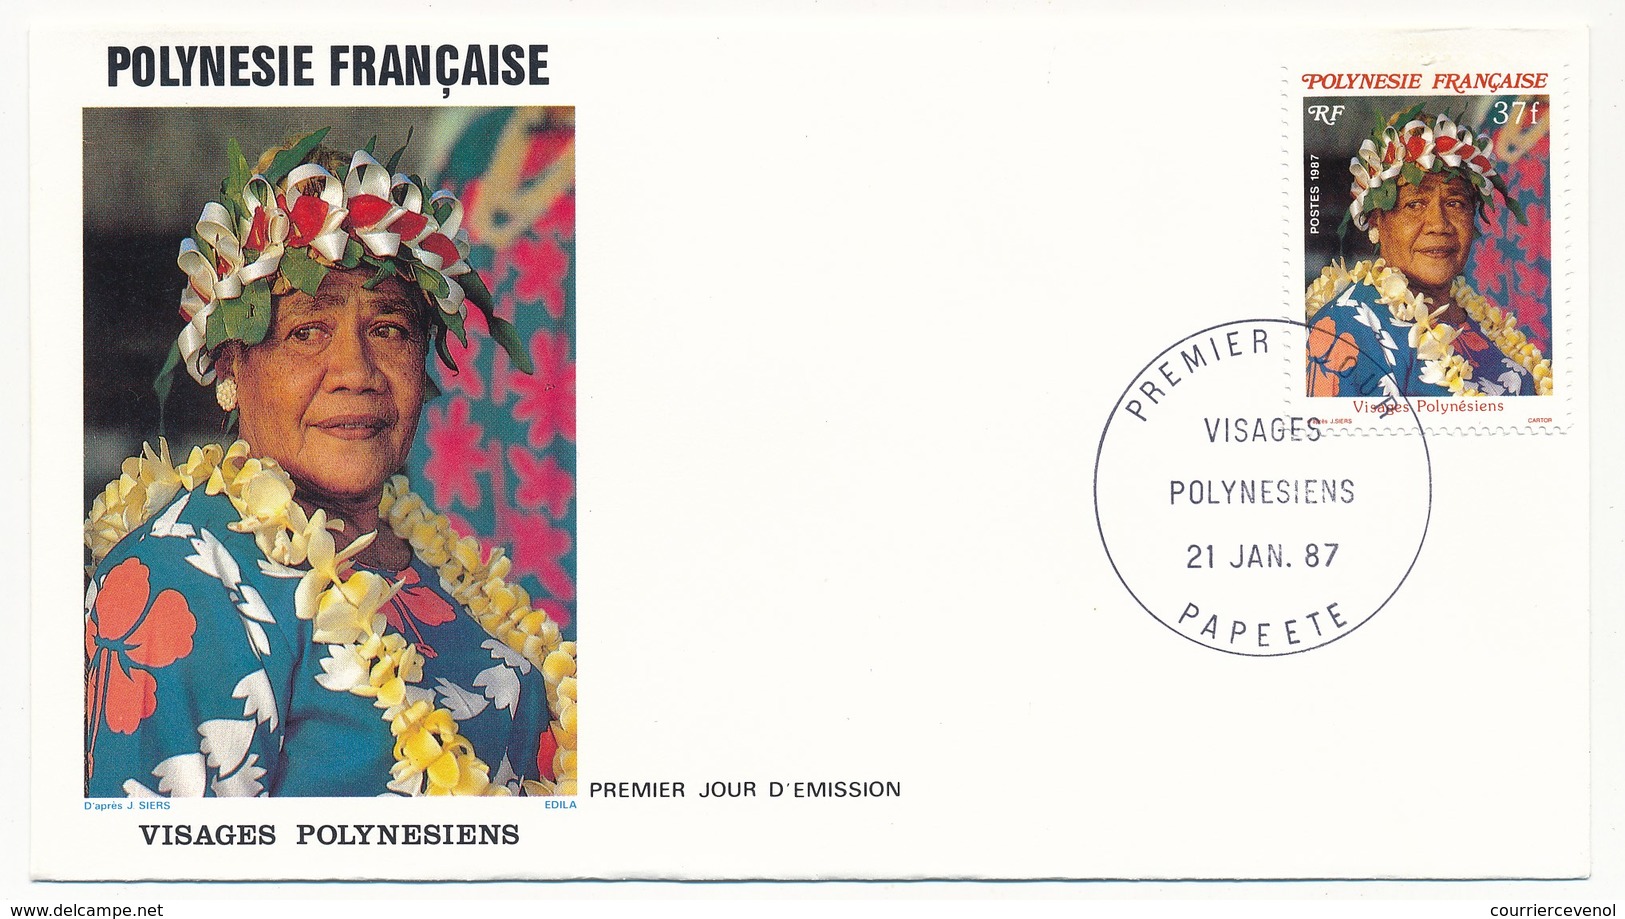 POLYNESIE FRANCAISE - 3 FDC - Visages Polynésiens - 21 Janvier 1987 - Papeete - FDC